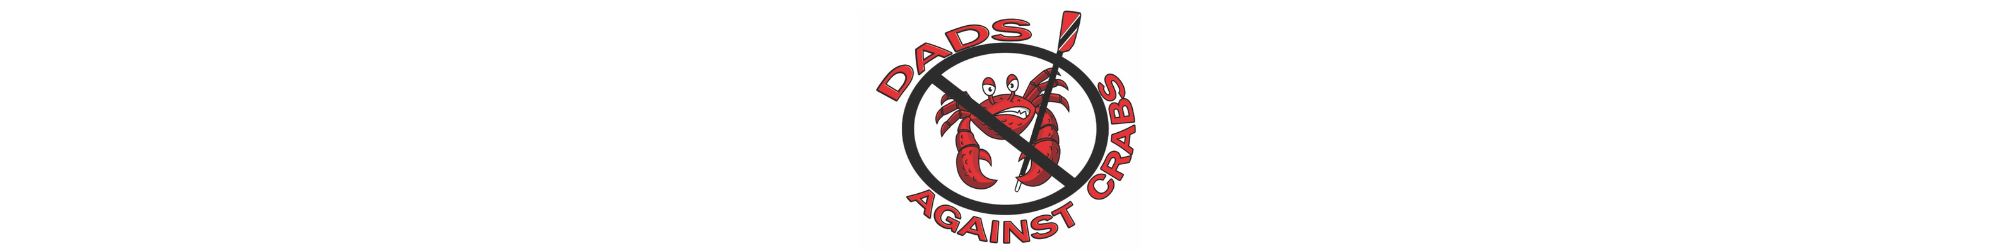 Kraken and Dad's Against Crabs (1)